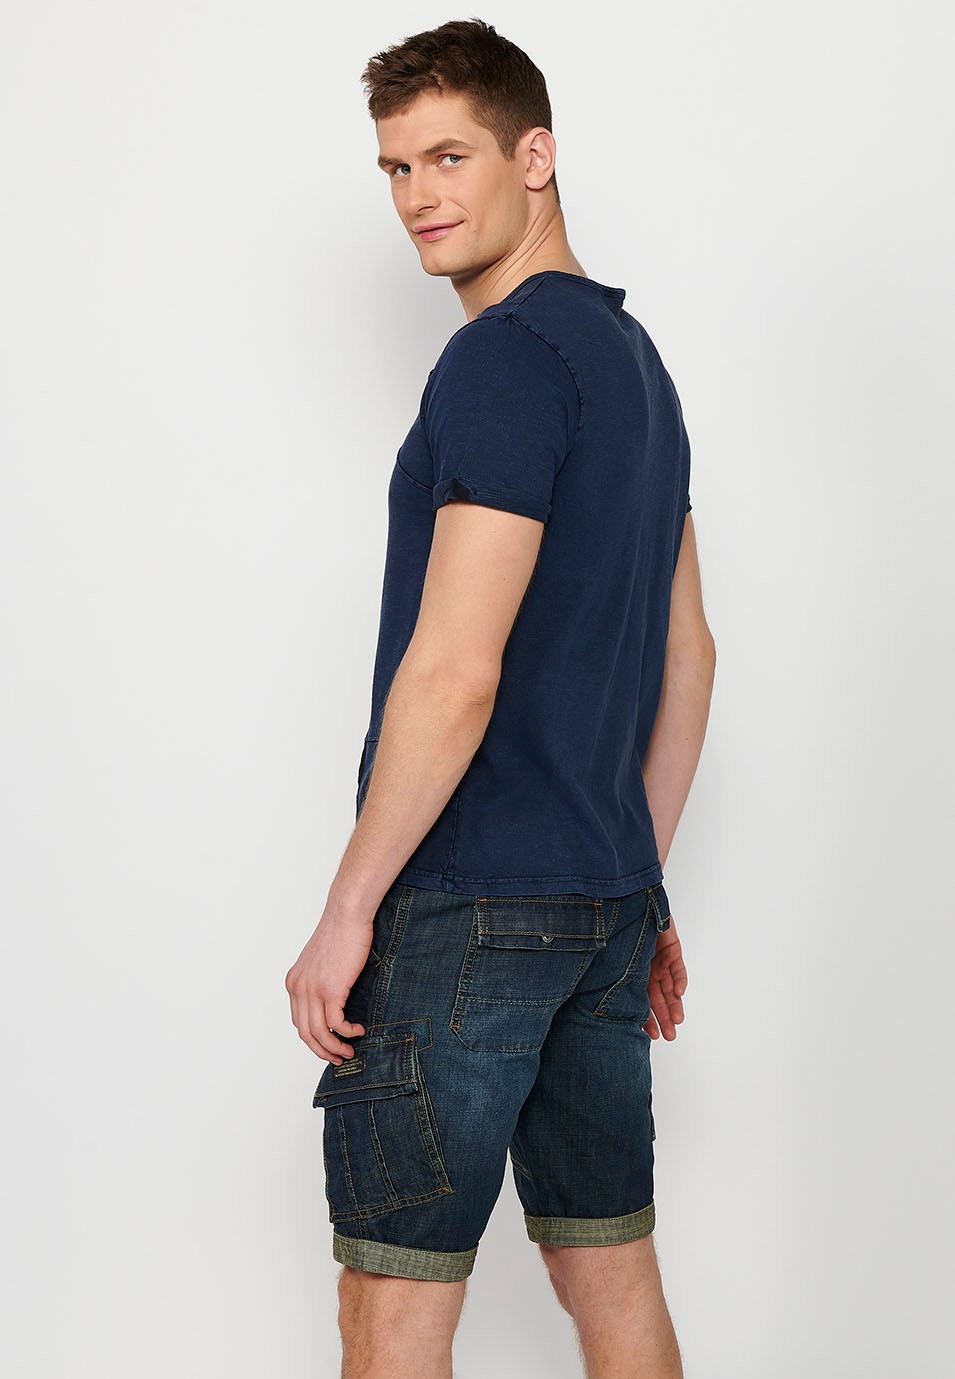 Camiseta de manga corta, cuello redondo con abertura, color azul para hombre